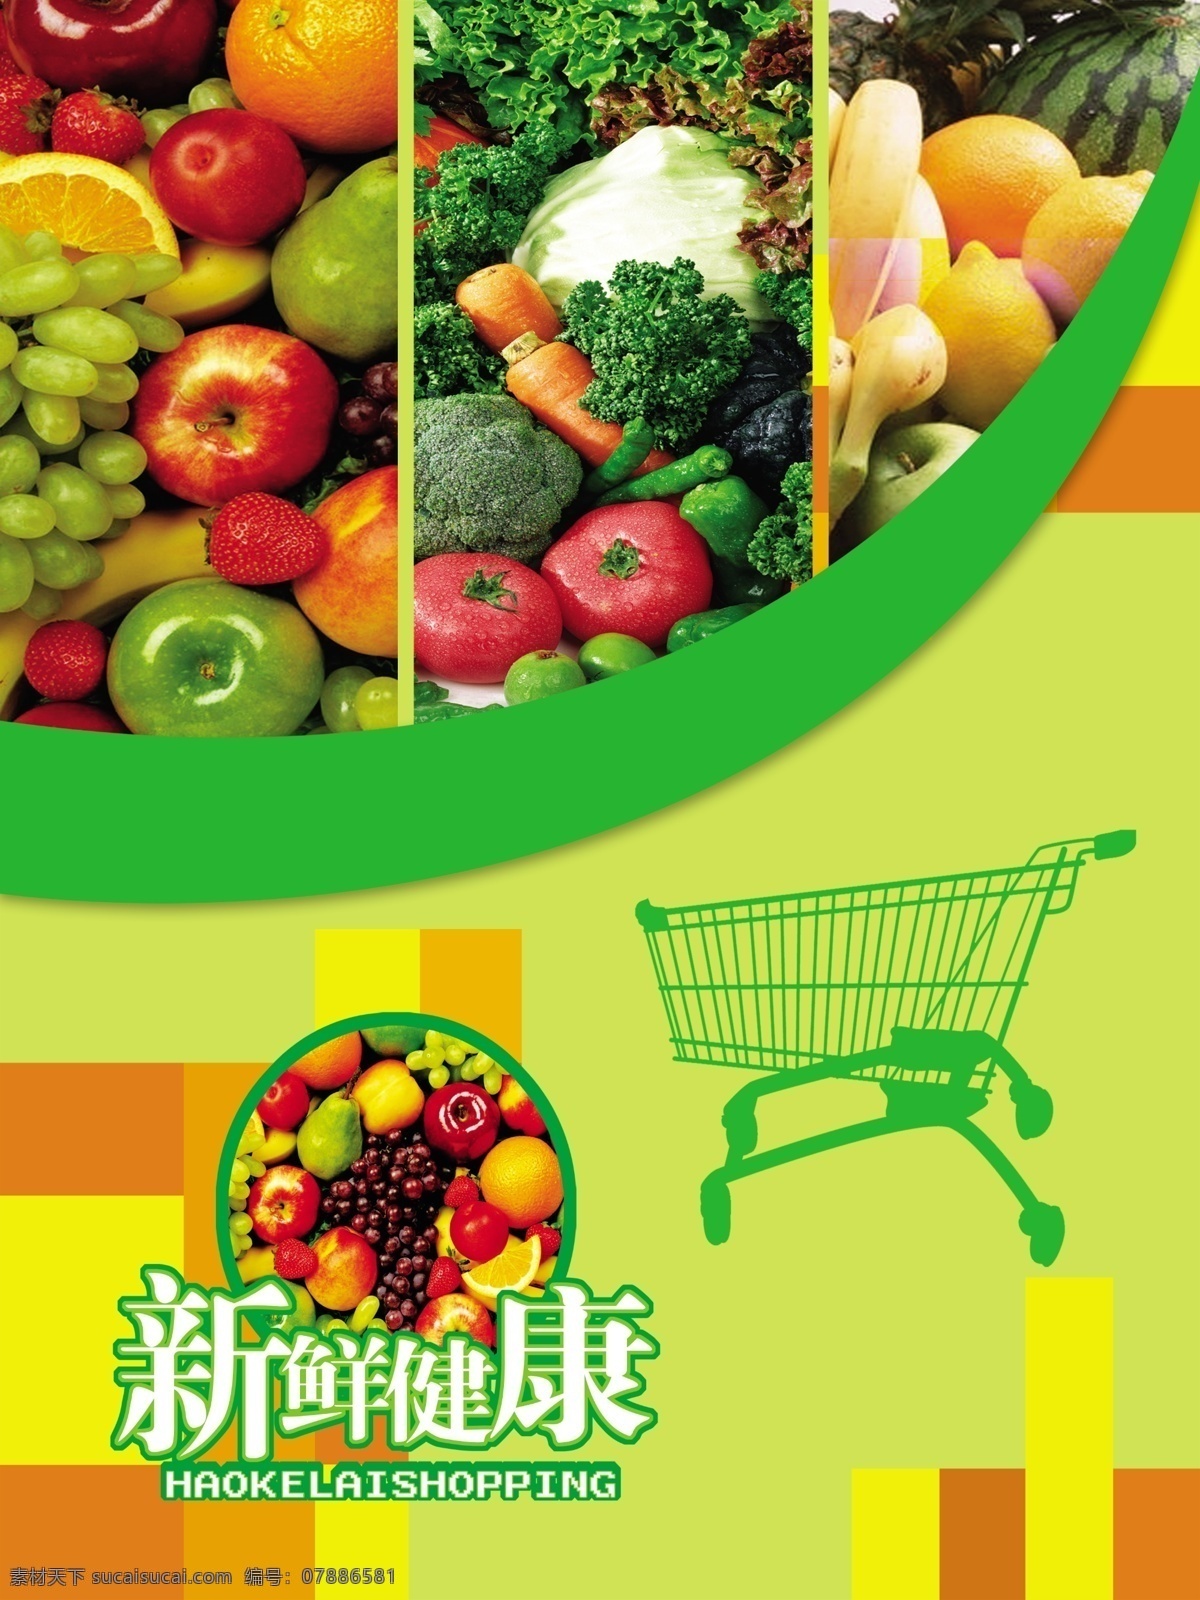 生鲜水果 超市 生鲜 天天新鲜 新鲜水果 蔬菜 水果 超市展板 超市形象 超市写真